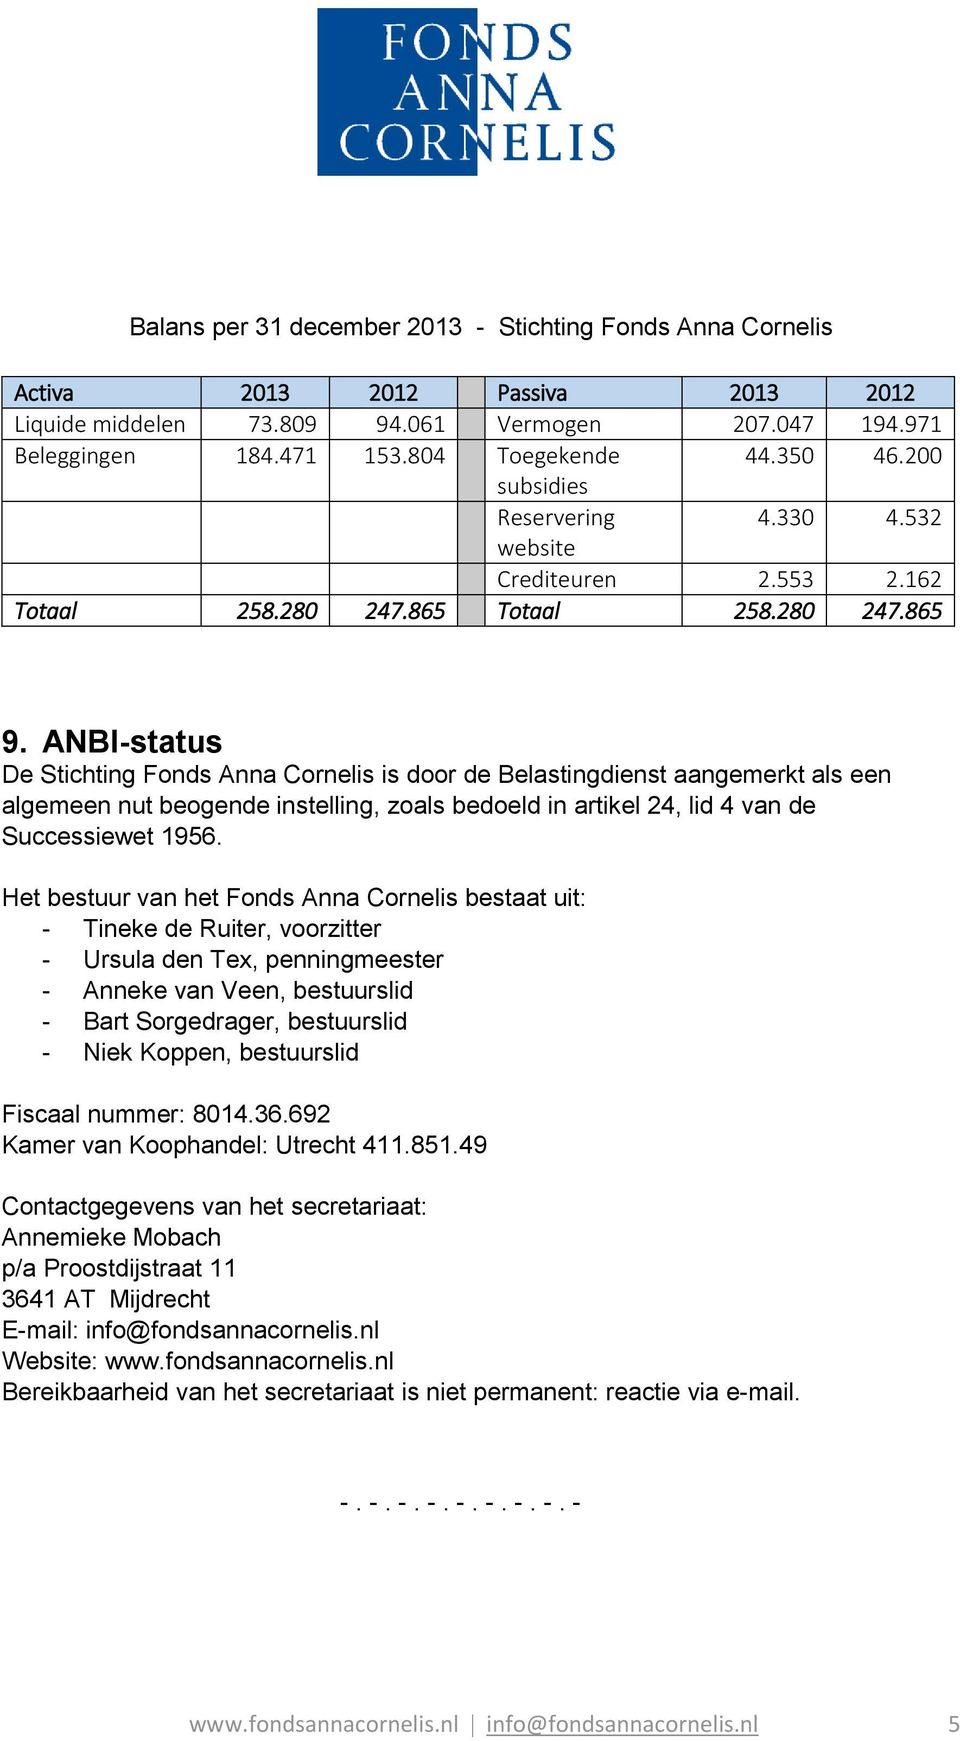 ANBI-status De Stichting Fonds Anna Cornelis is door de Belastingdienst aangemerkt als een algemeen nut beogende instelling, zoals bedoeld in artikel 24, lid 4 van de Successiewet 1956.